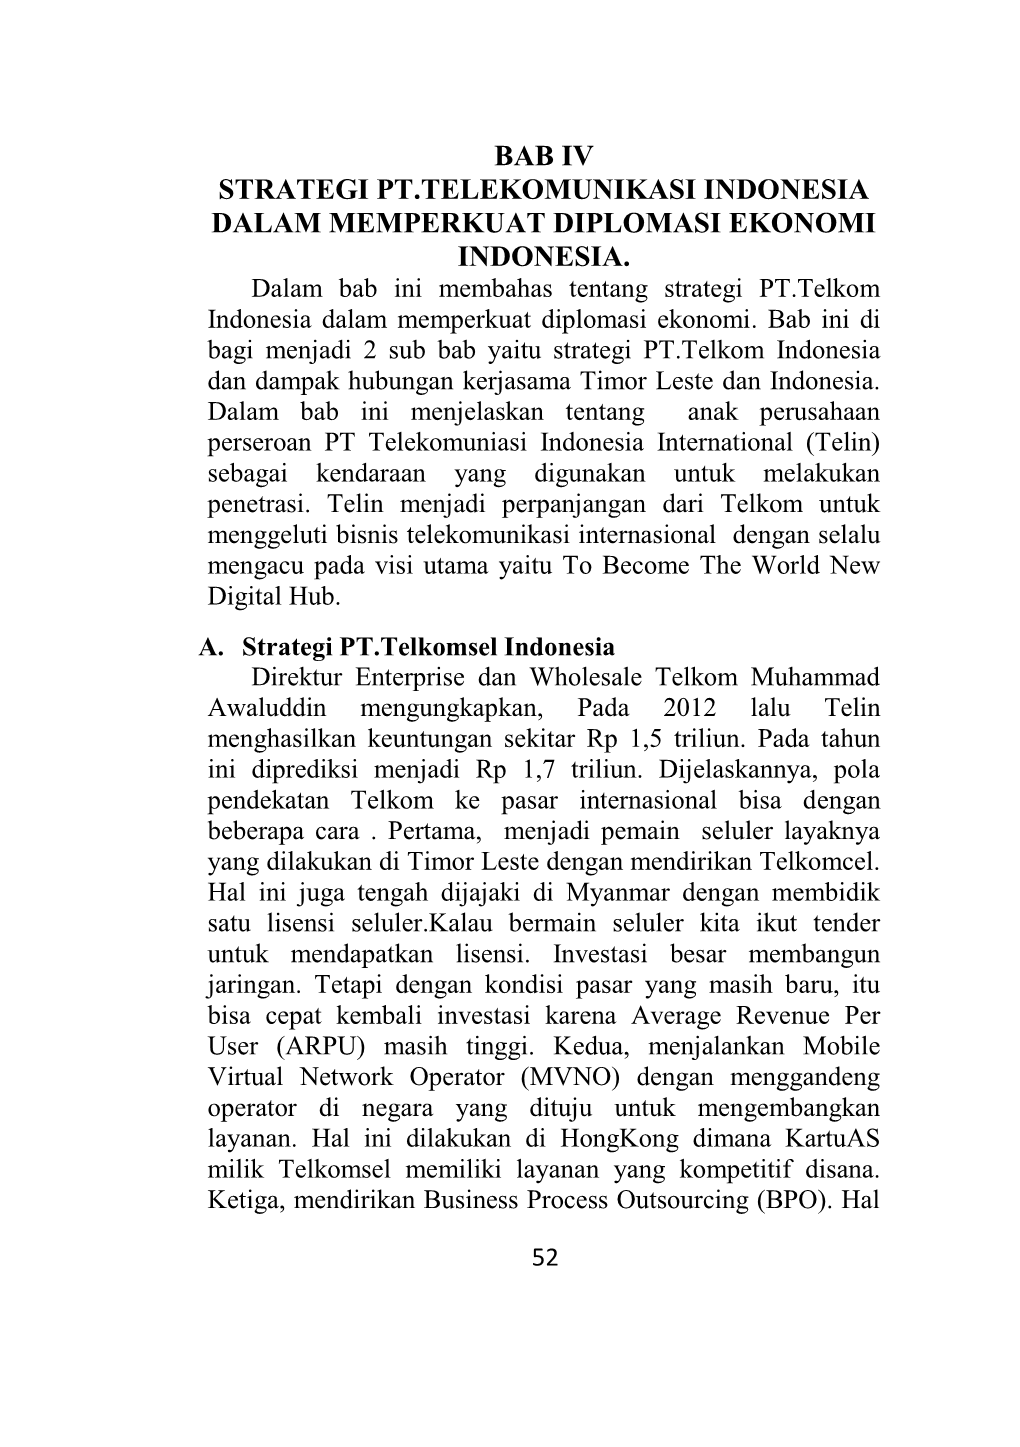 Bab Iv Strategi Pt.Telekomunikasi Indonesia Dalam Memperkuat Diplomasi Ekonomi Indonesia